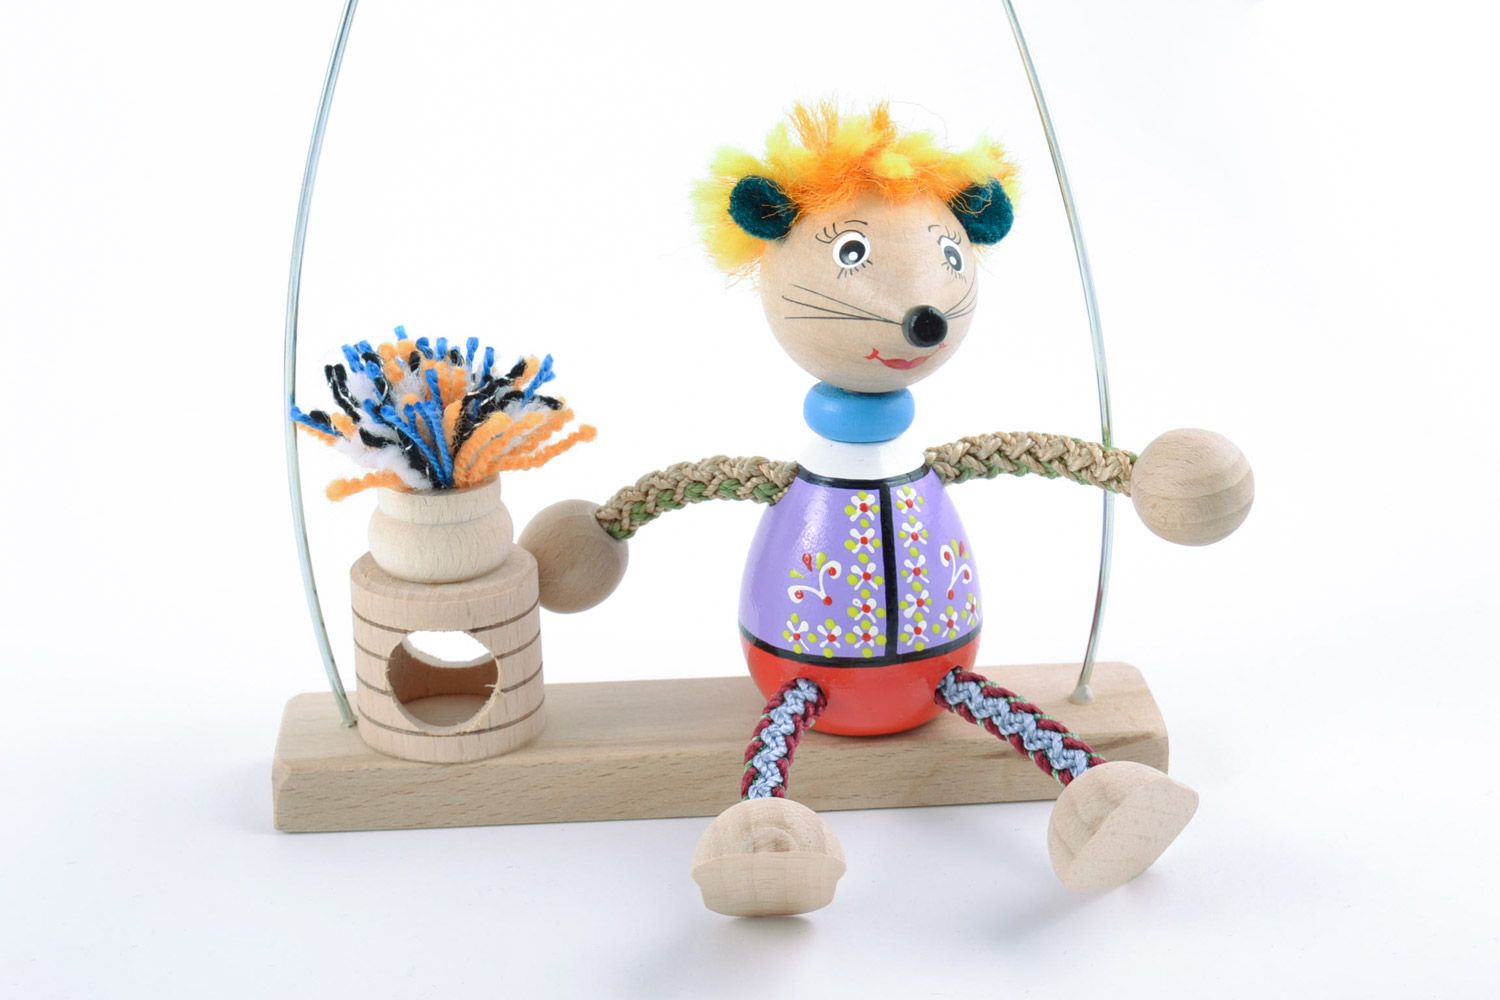 Игрушка из дерева на пружинке расписанная красками в виде мышки на лавочке фото 4